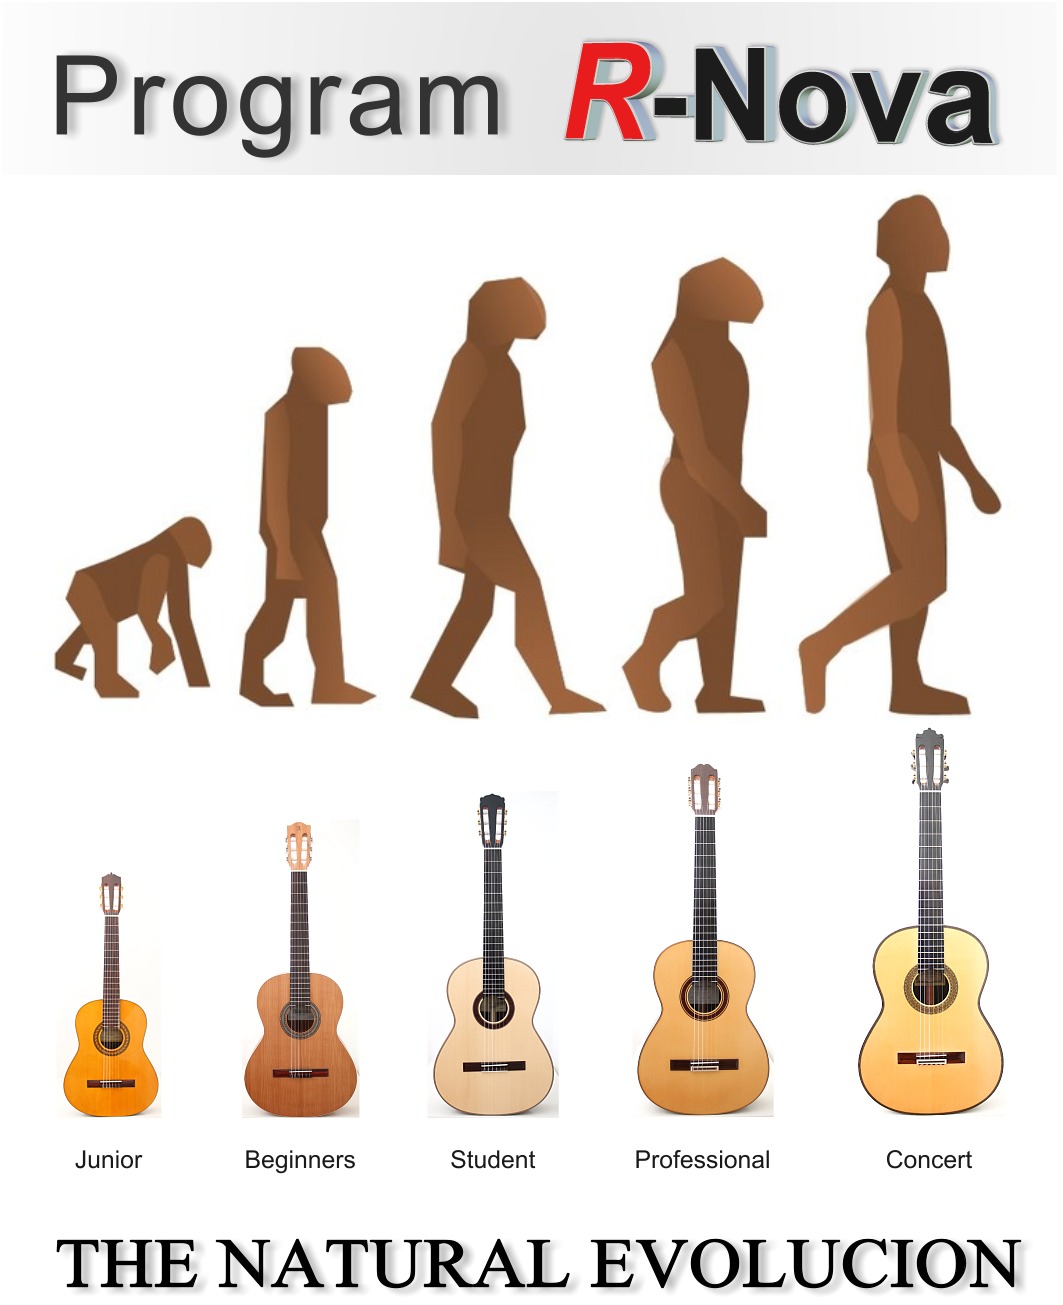 Program R-Nova